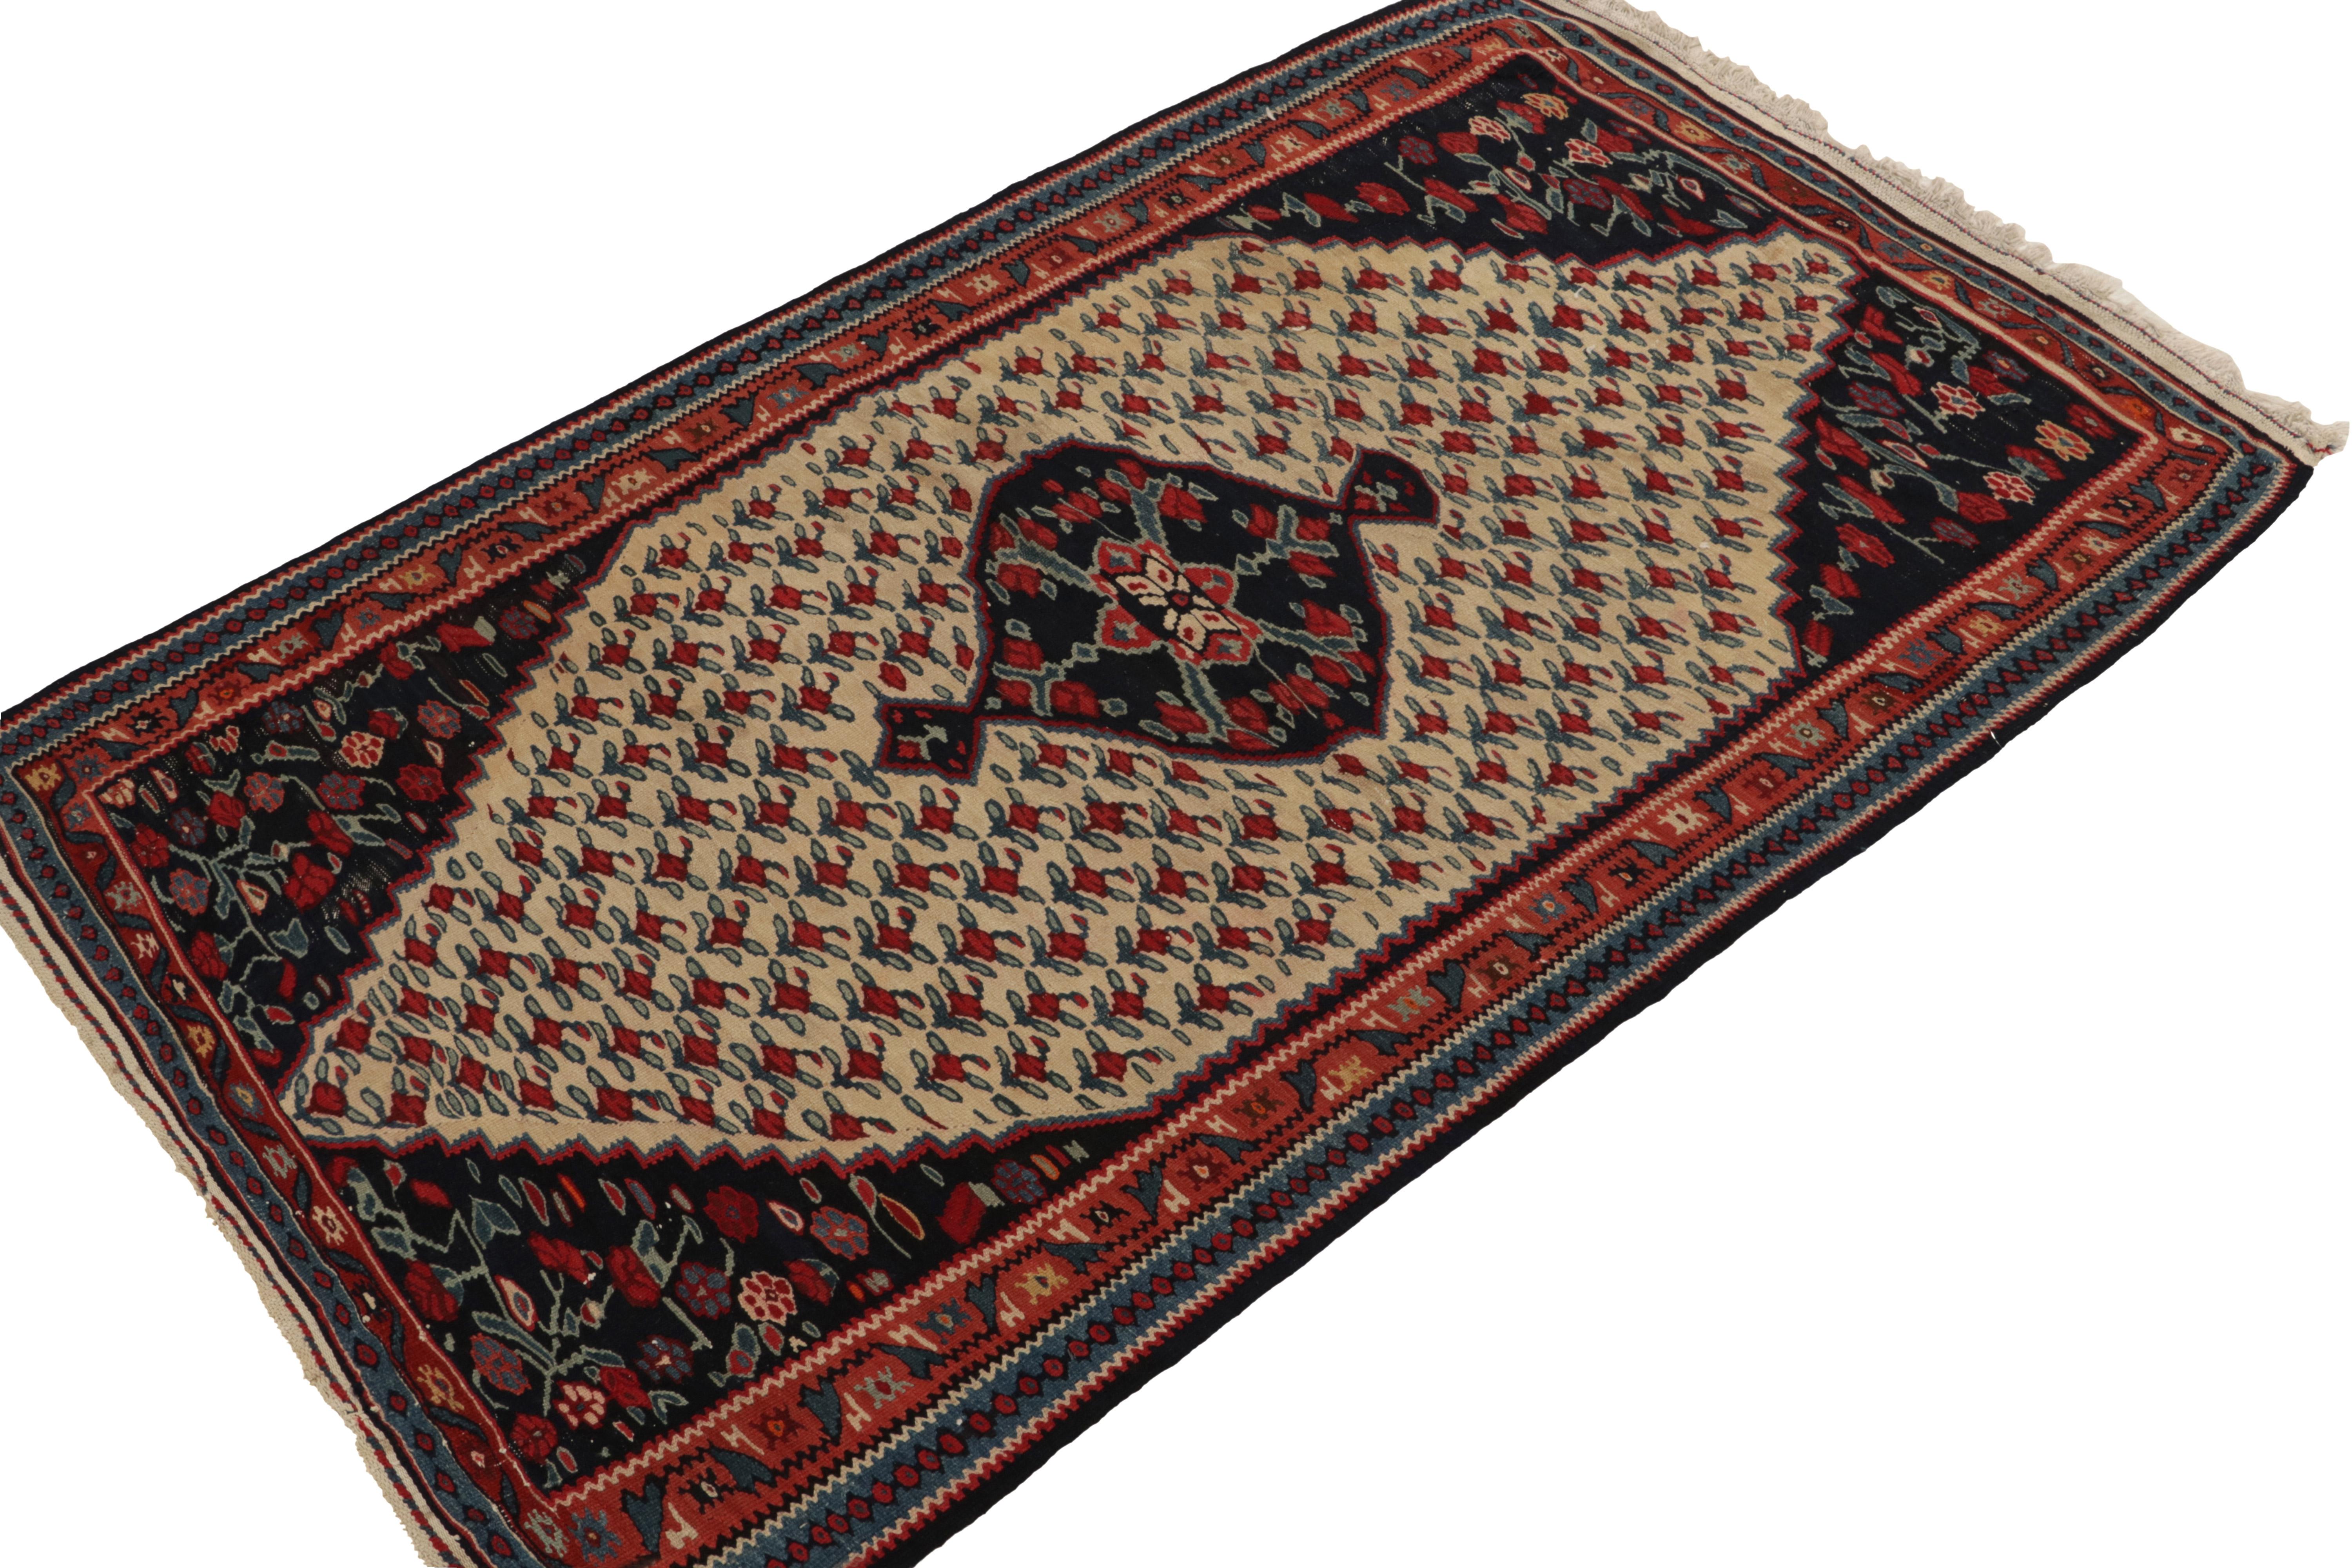 Handgewebter, antiker Senneh-Kilim-Teppich (3x5) aus Wolle, ca. 1930-1940. Dieses schöne Stück zeigt ein brillantes florales Muster, das sich von anderen Stammesprovenienzen in der persischen Weberei unterscheidet. Mit satten Rot- und Blautönen auf